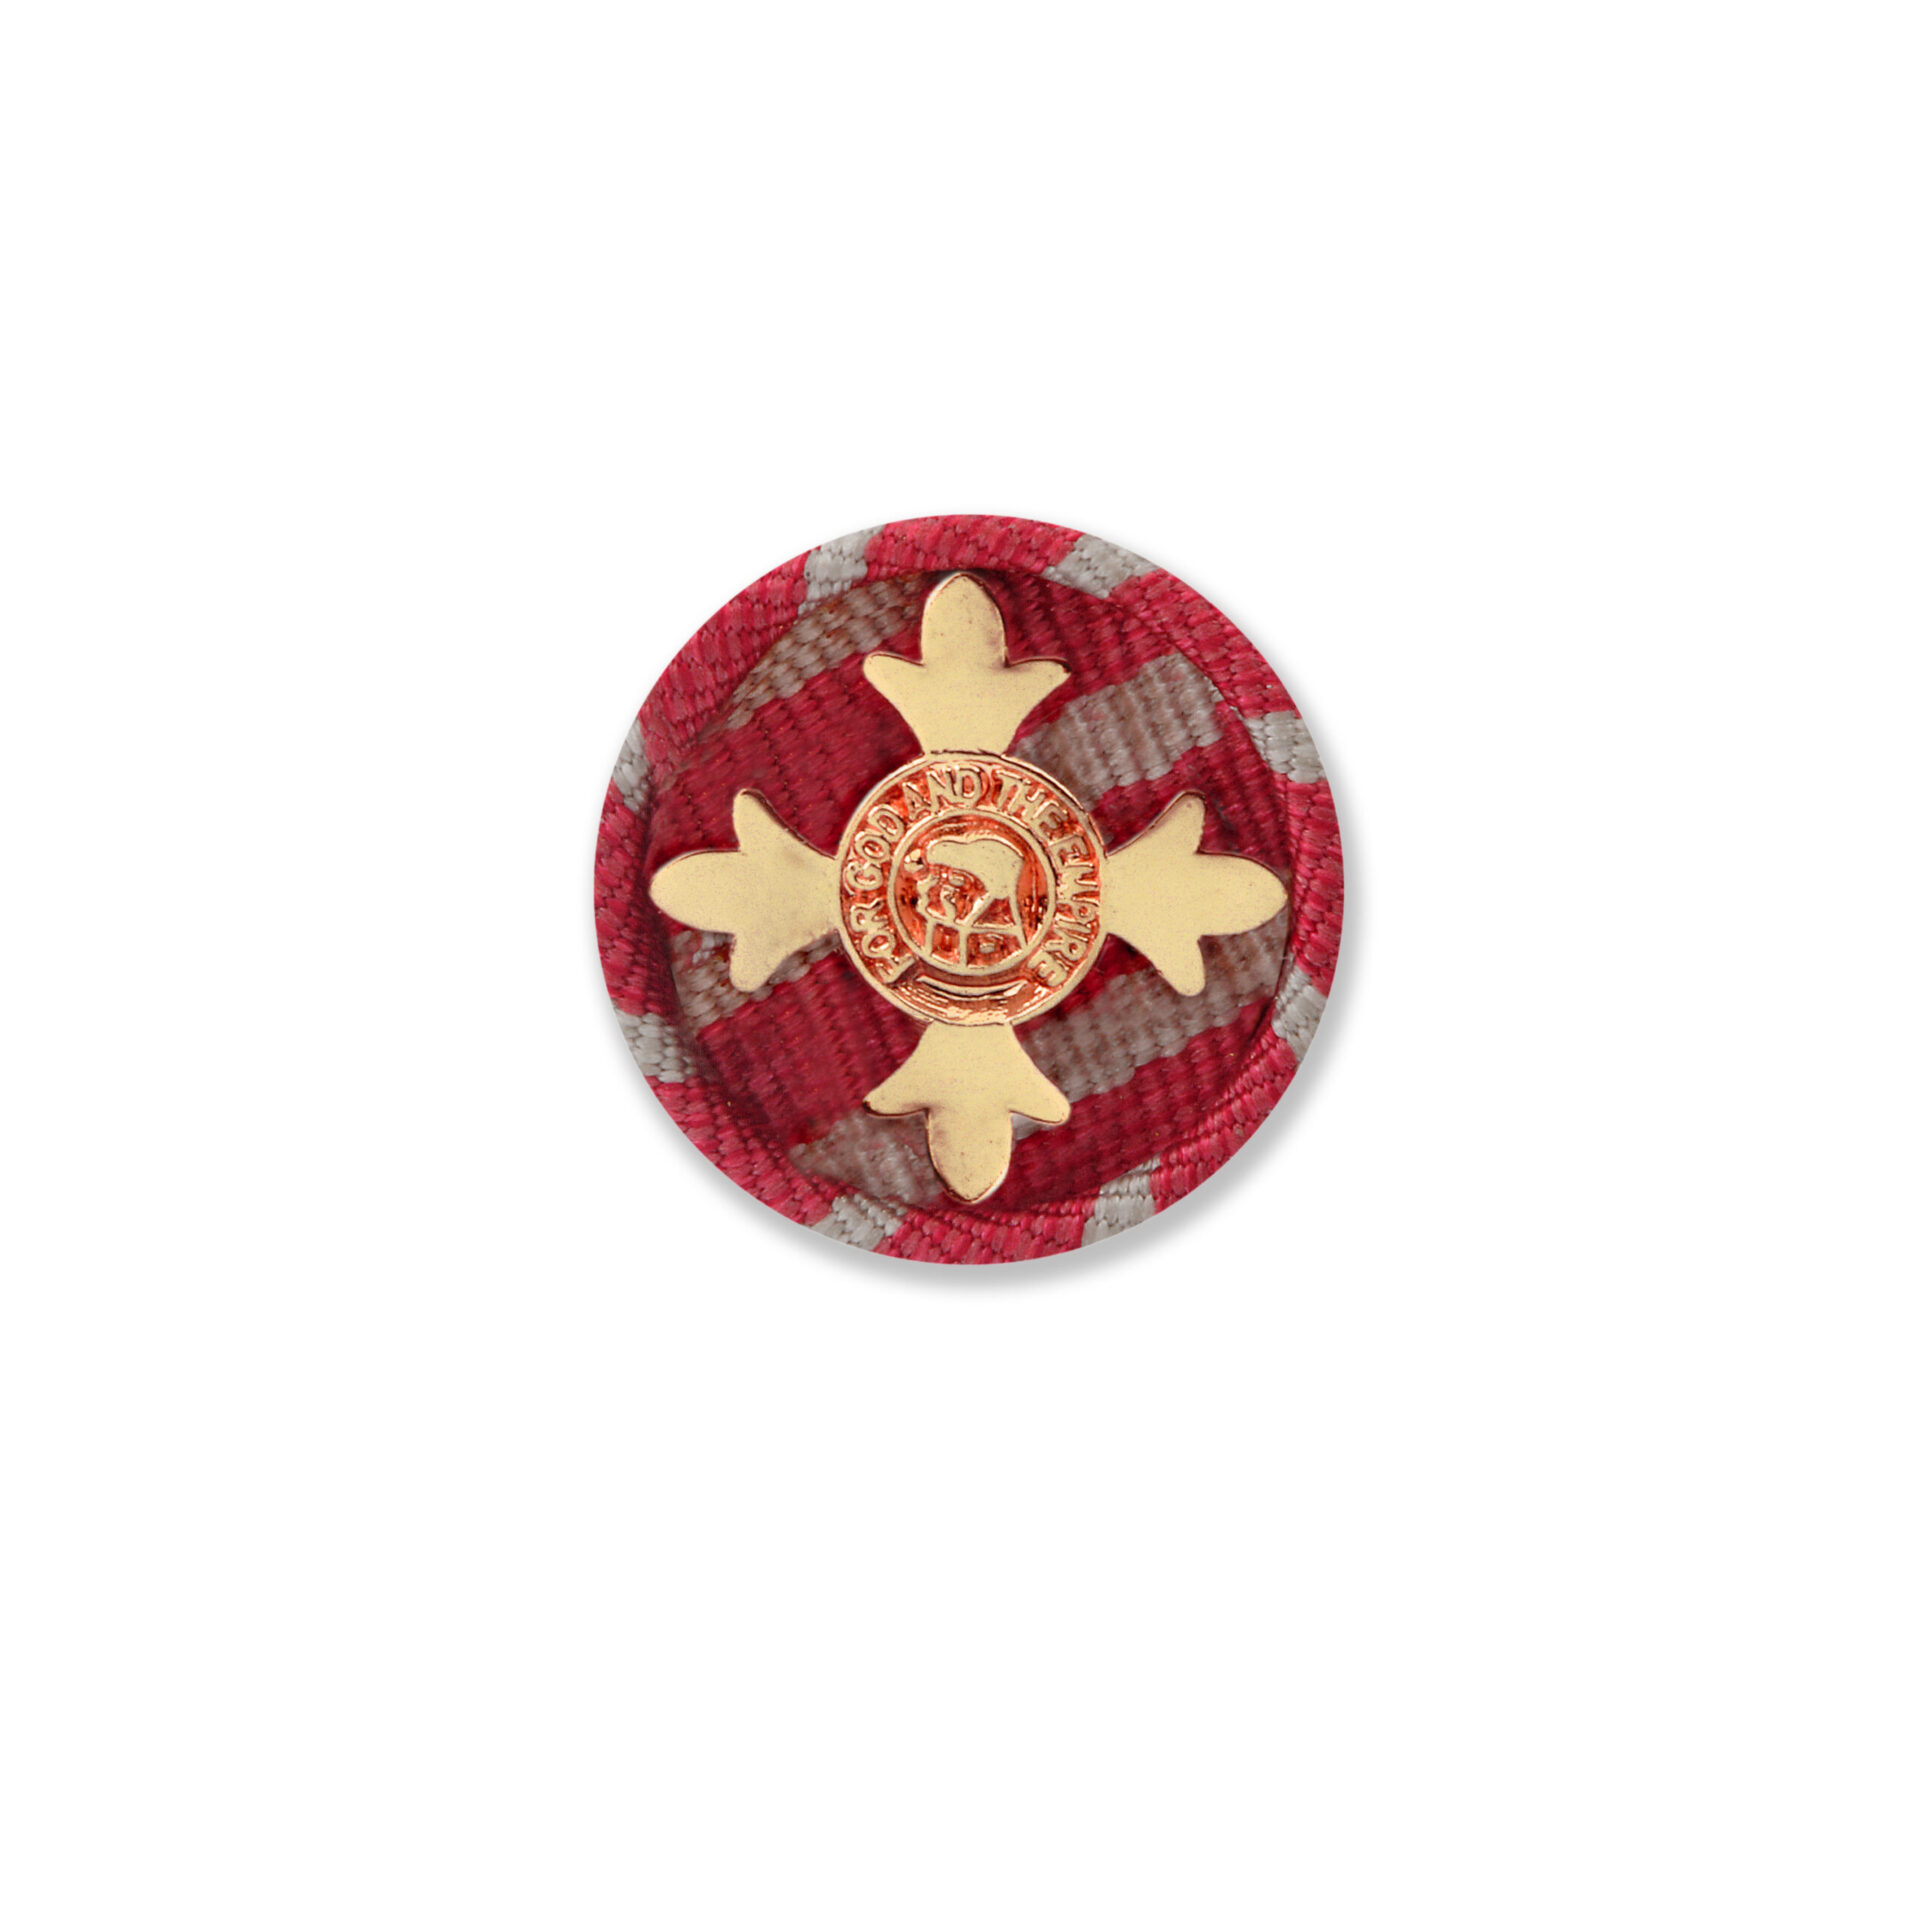 Order of the British Empire (OBE) Lapel Pin - Order of the Most Excellent British Empire - OBE Medal for sale